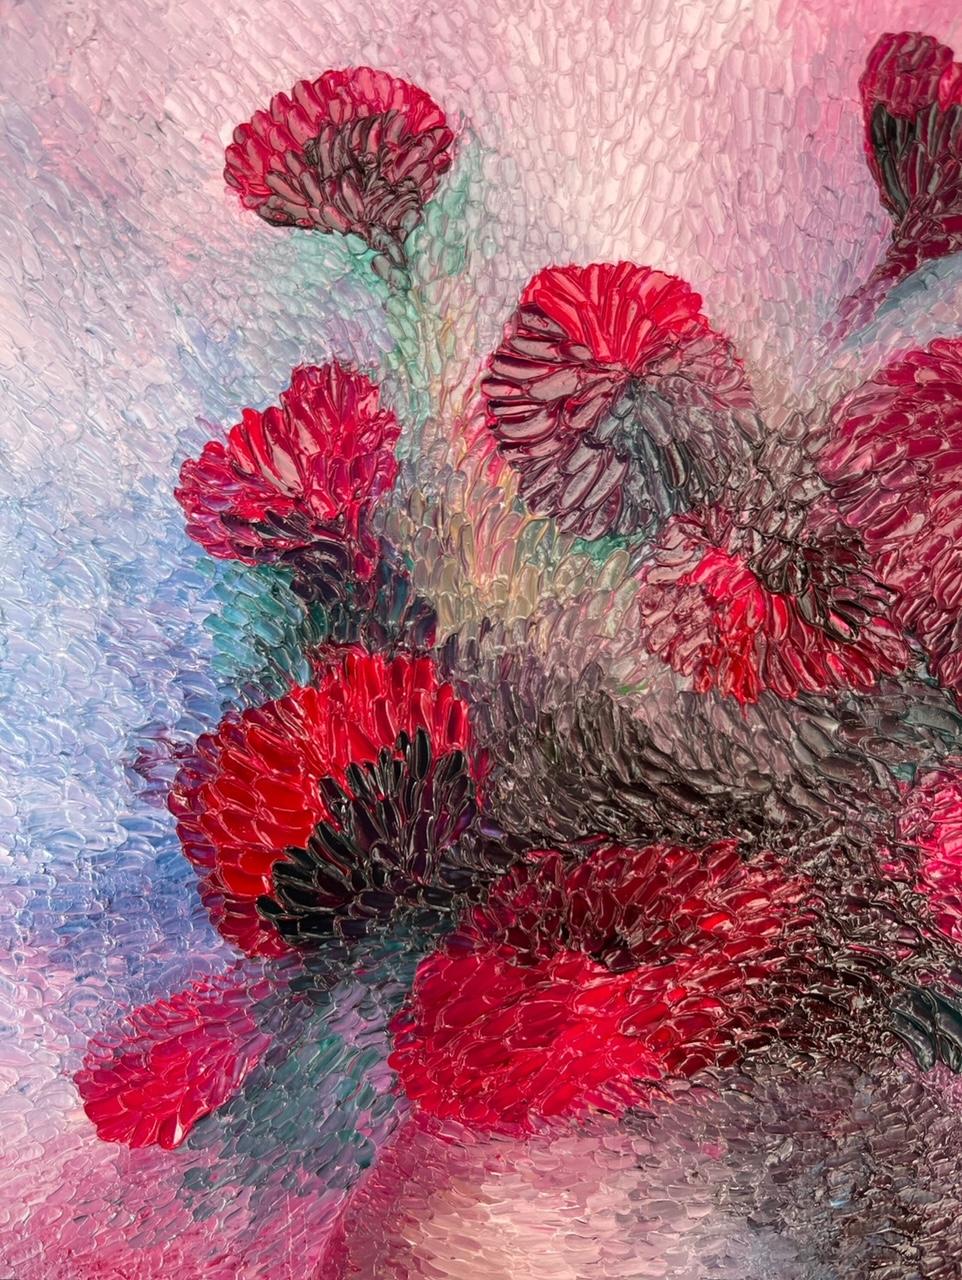 Dévoilez une touche de brillance artistique avec cette peinture originale de Petrino, où la beauté intemporelle des fleurs rouges est immortalisée sur la toile.La texture vivante et les traits audacieux de cette peinture à l'huile ajoutent une